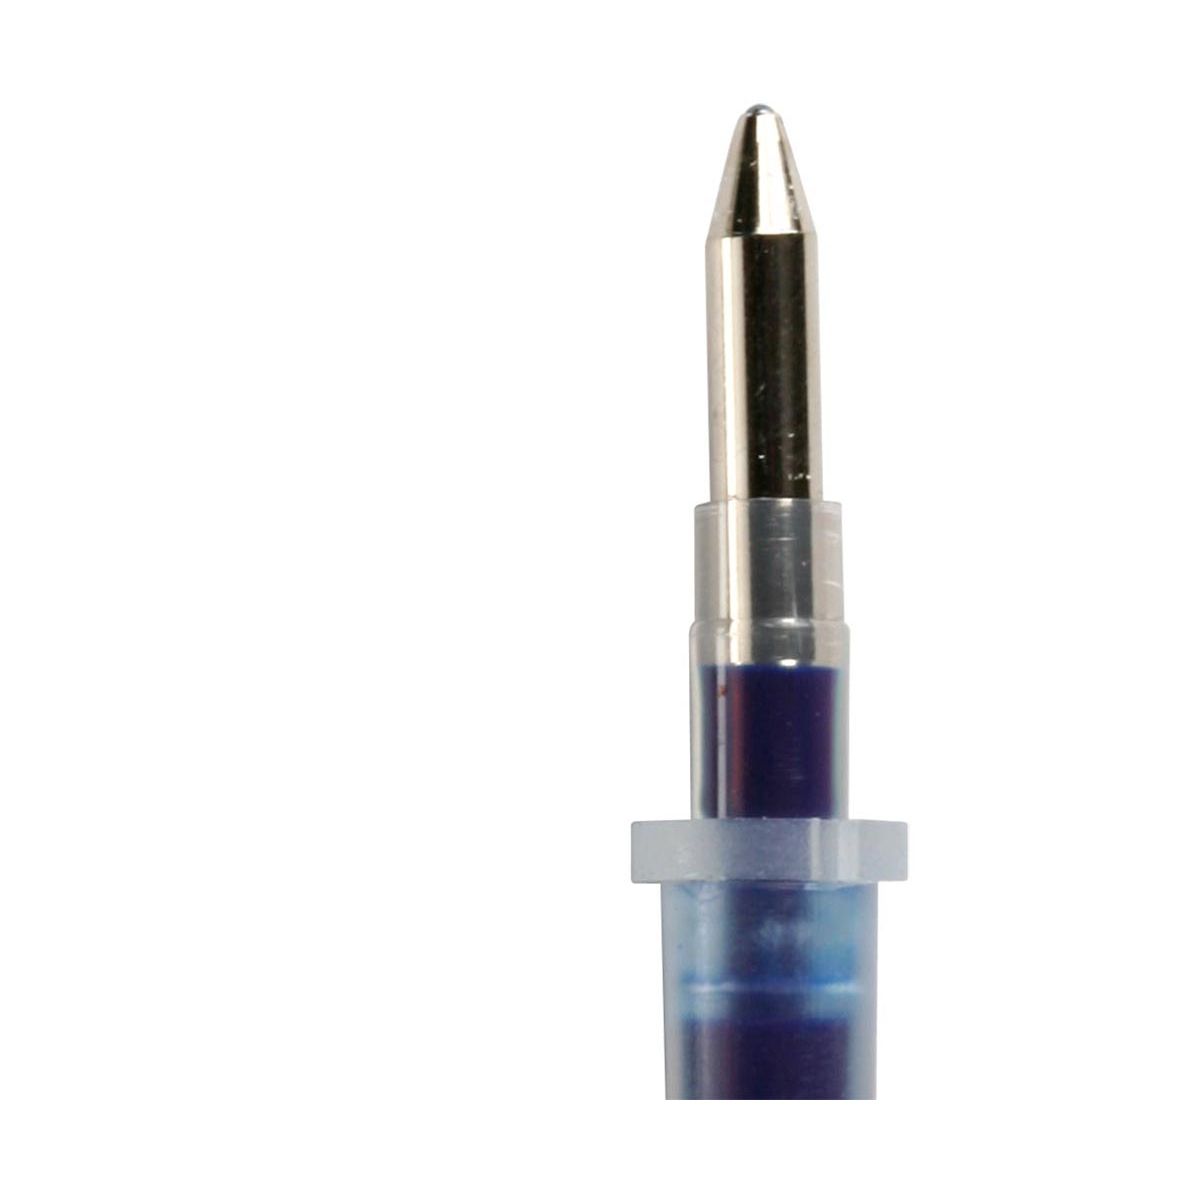 Wkład do długopisu Titanum, niebieski 0,7mm (GA1030/1089)